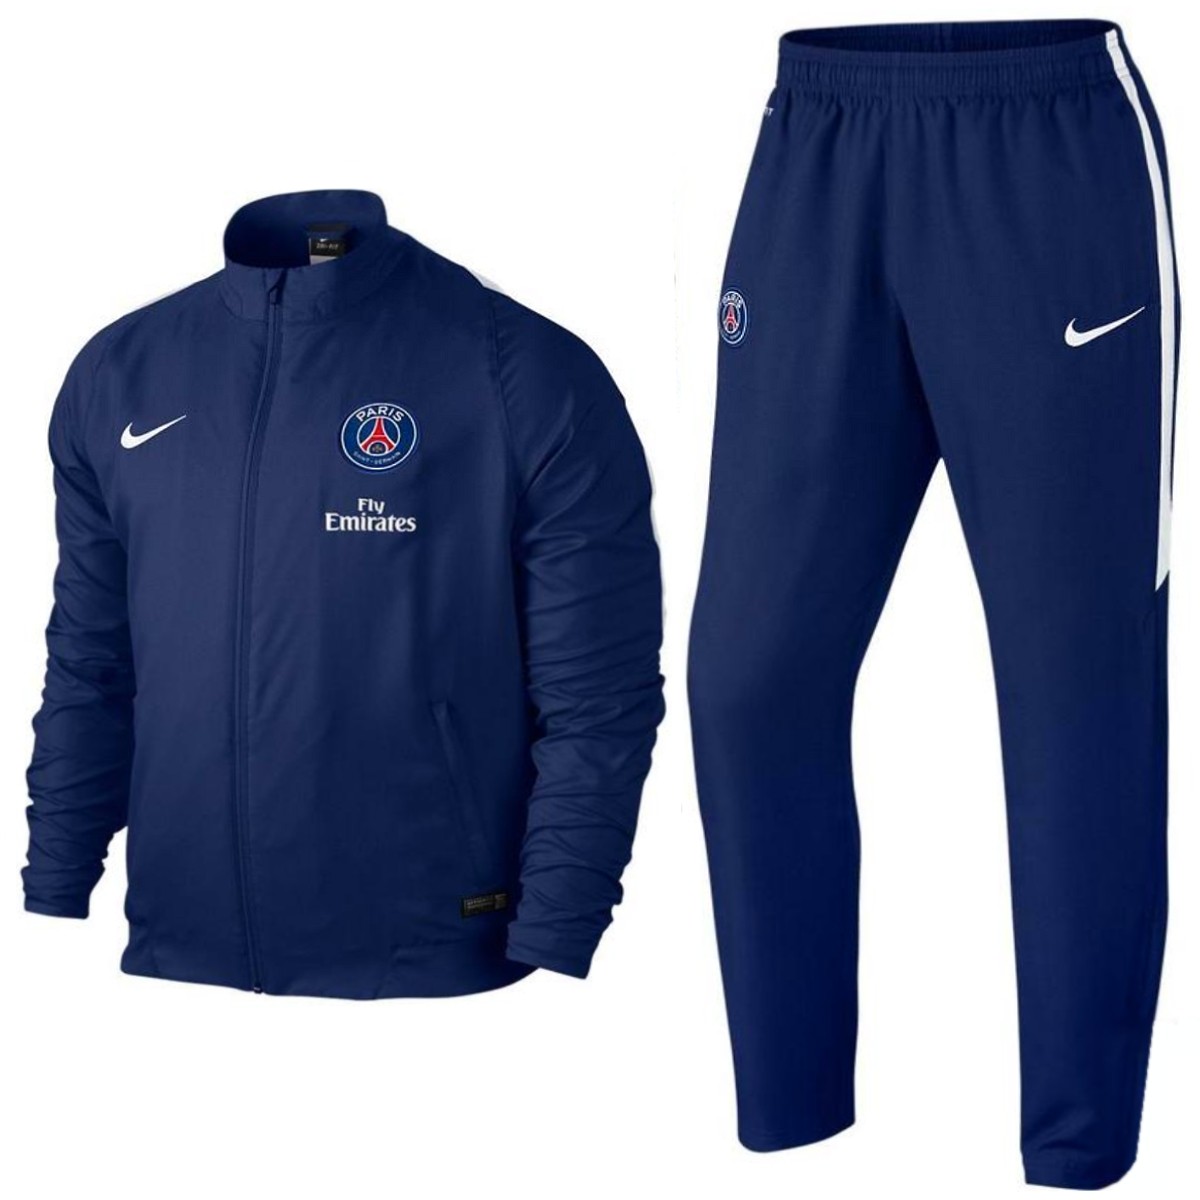 Survetement de Paris Saint 2015/16 bleu - Nike - SportingPlus - for Sport